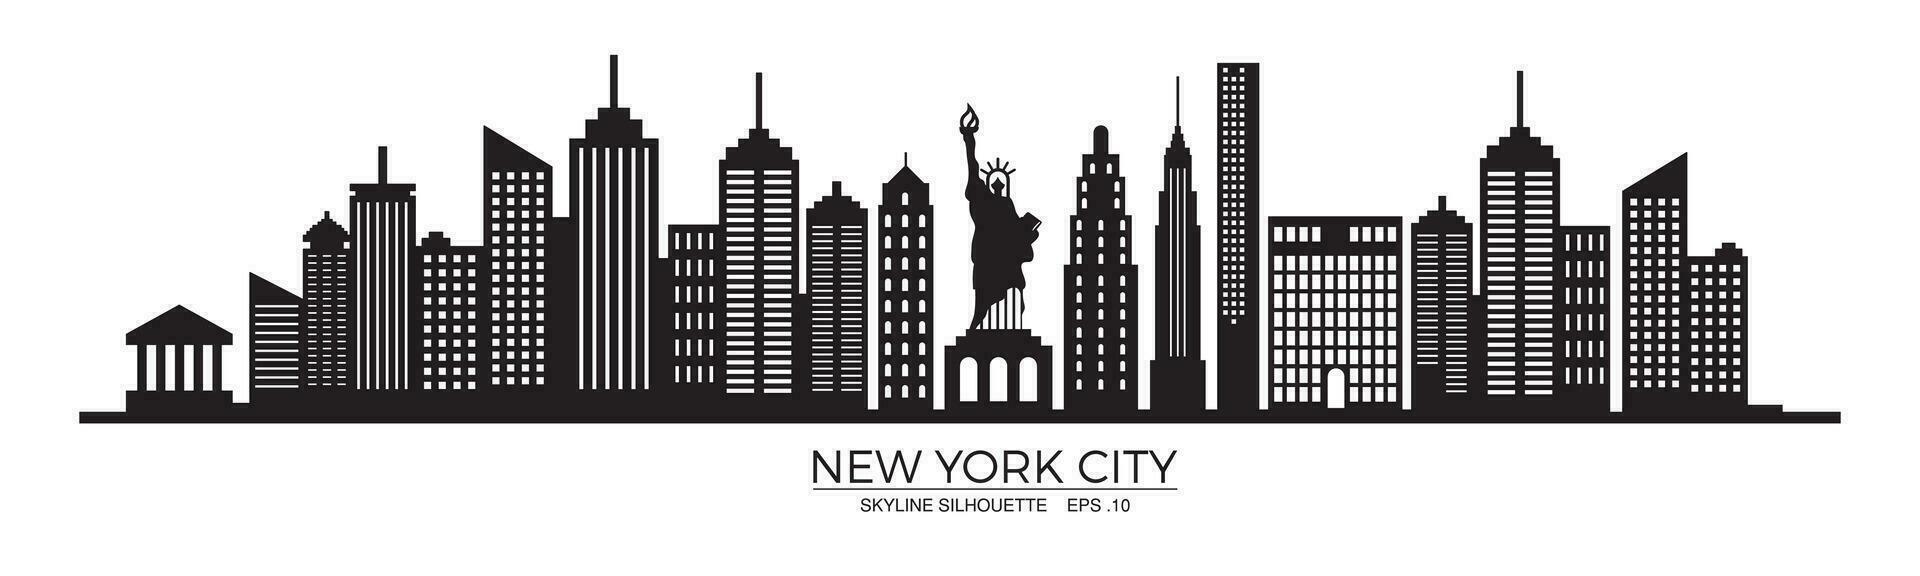 nieuw york stad horizon silhouet met standbeeld van vrijheid vector